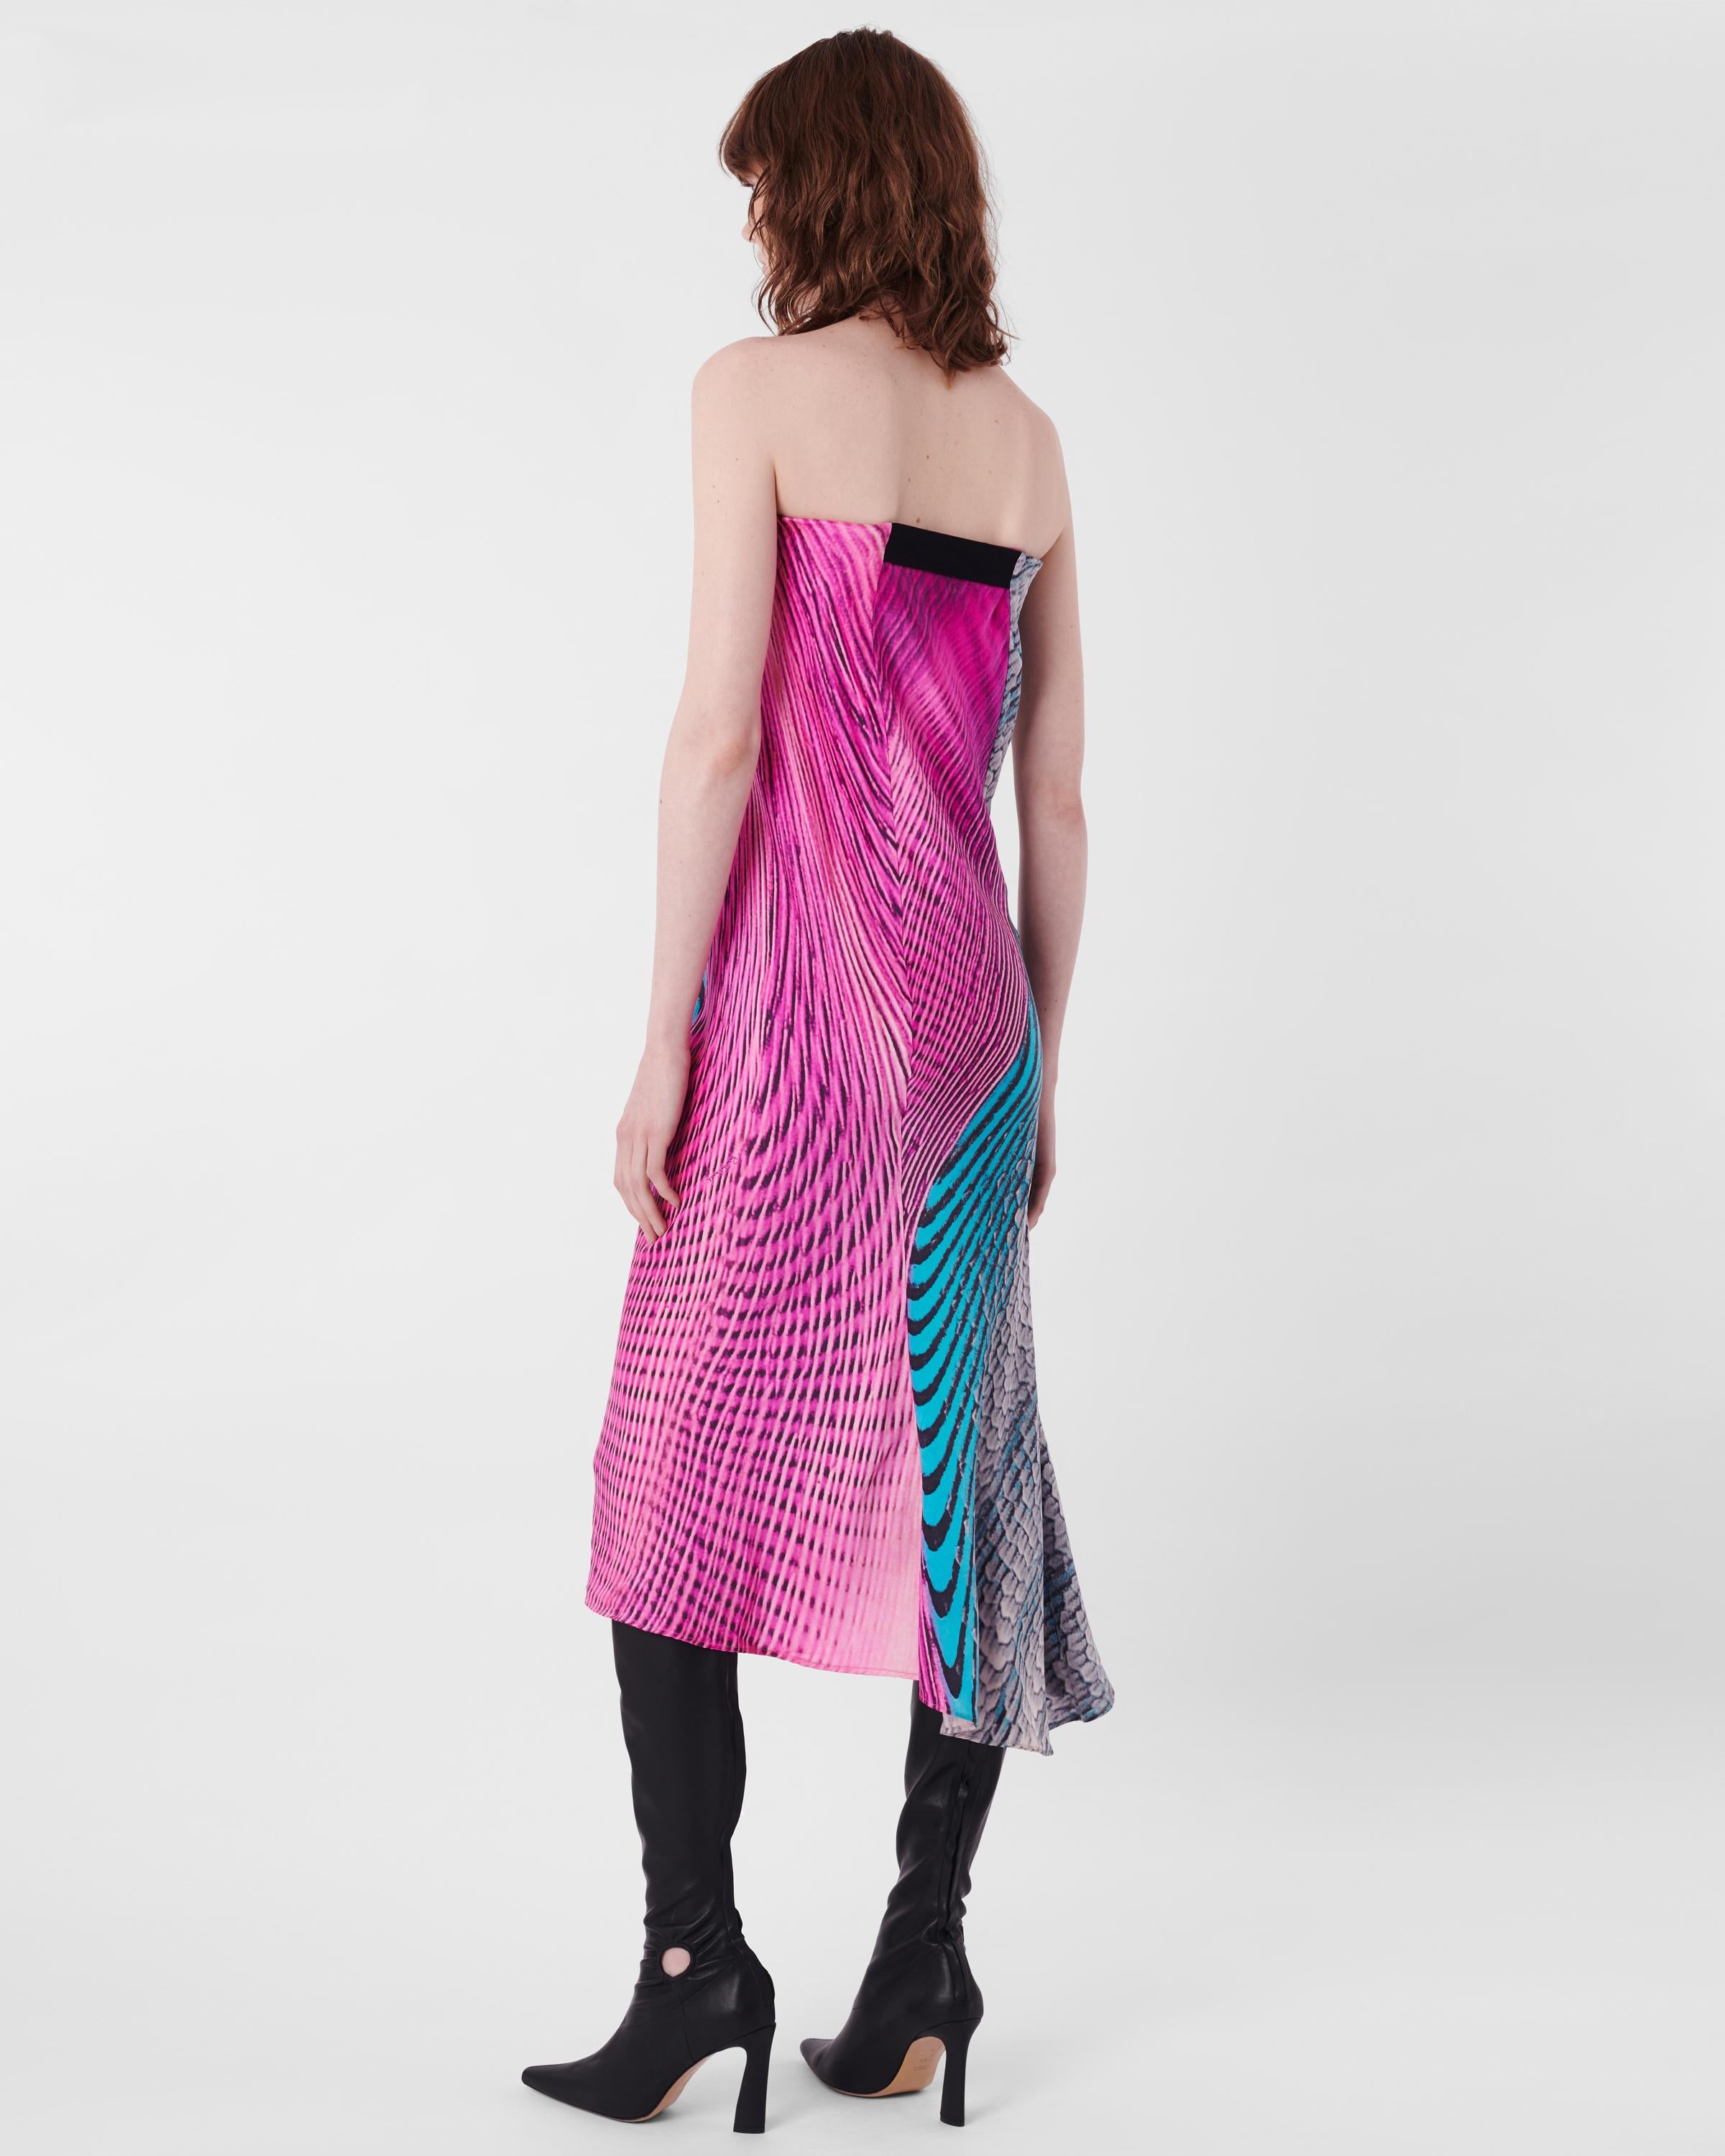 Women's Roberto Cavalli S/S 2001 Mermaid Print Maxi Skirt